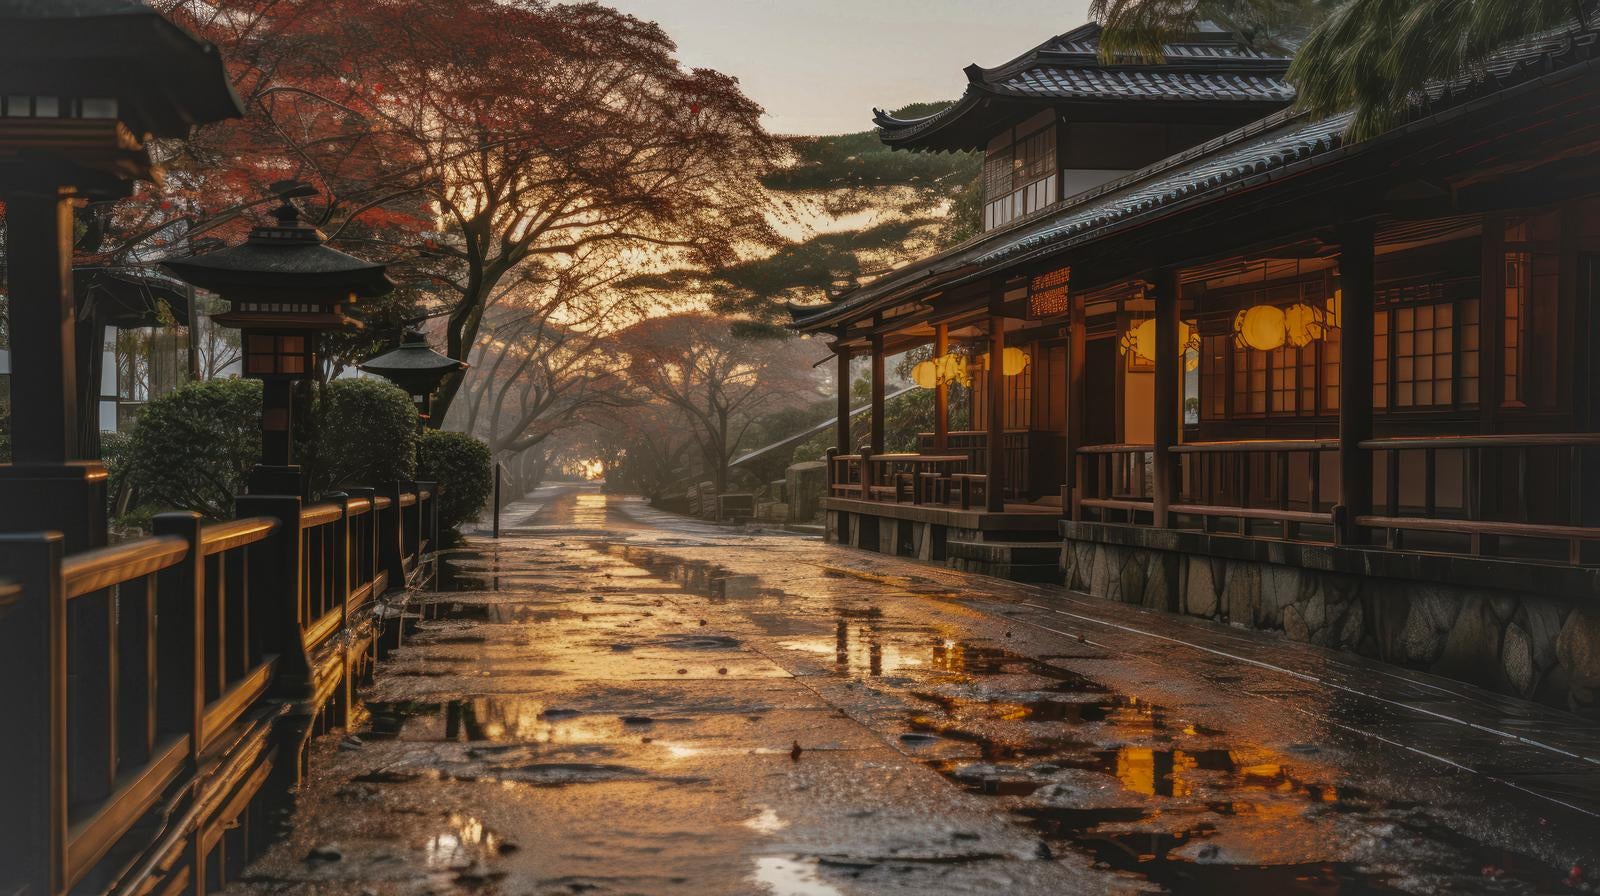 「雨上がりの日本風の建物」の写真